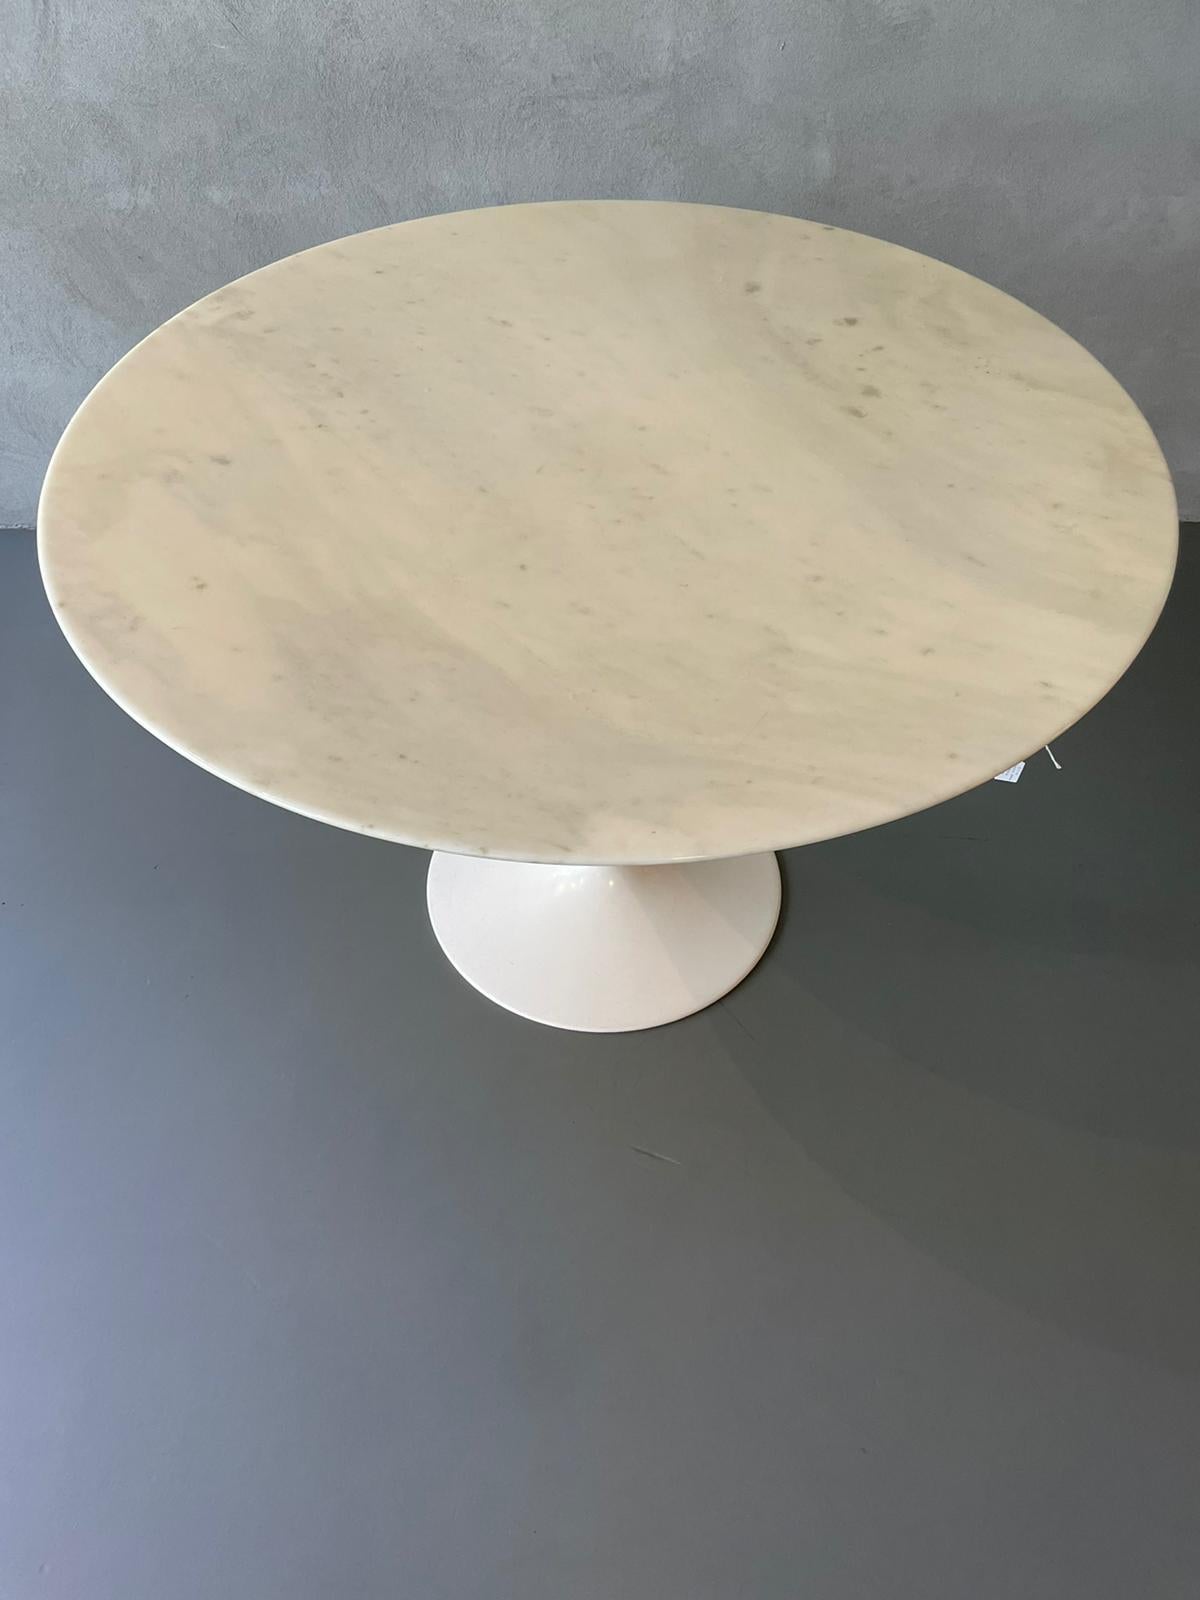 Italian Eero Saarinen Knoll Tulip Round Table Calacatta Marble Aluminum 1957